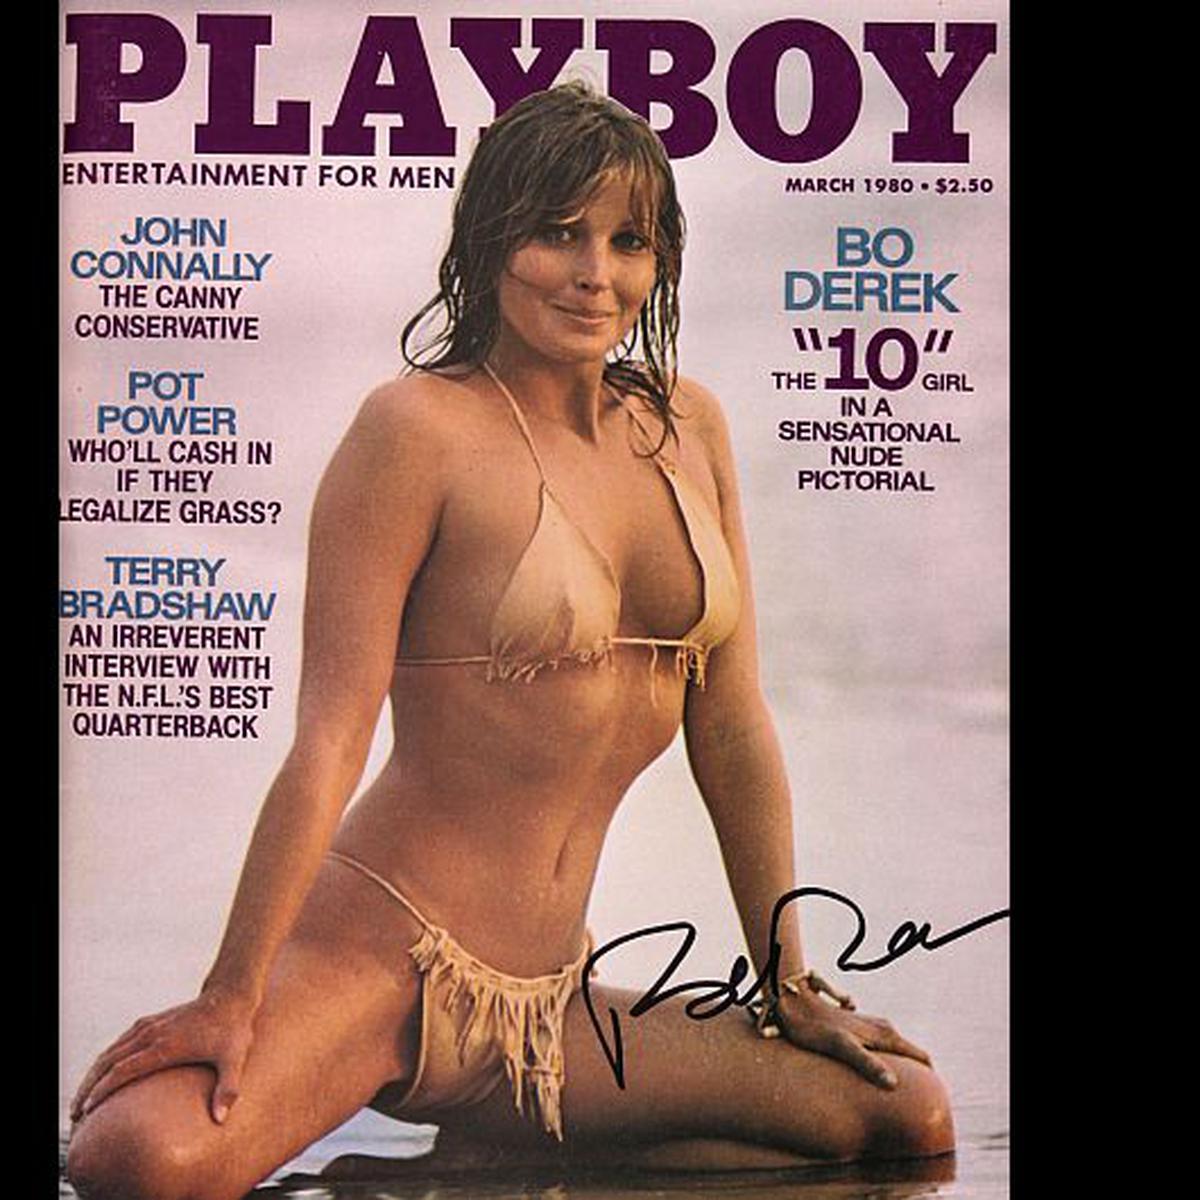 Bo Derek, protagonista de una portada de 'Playboy'